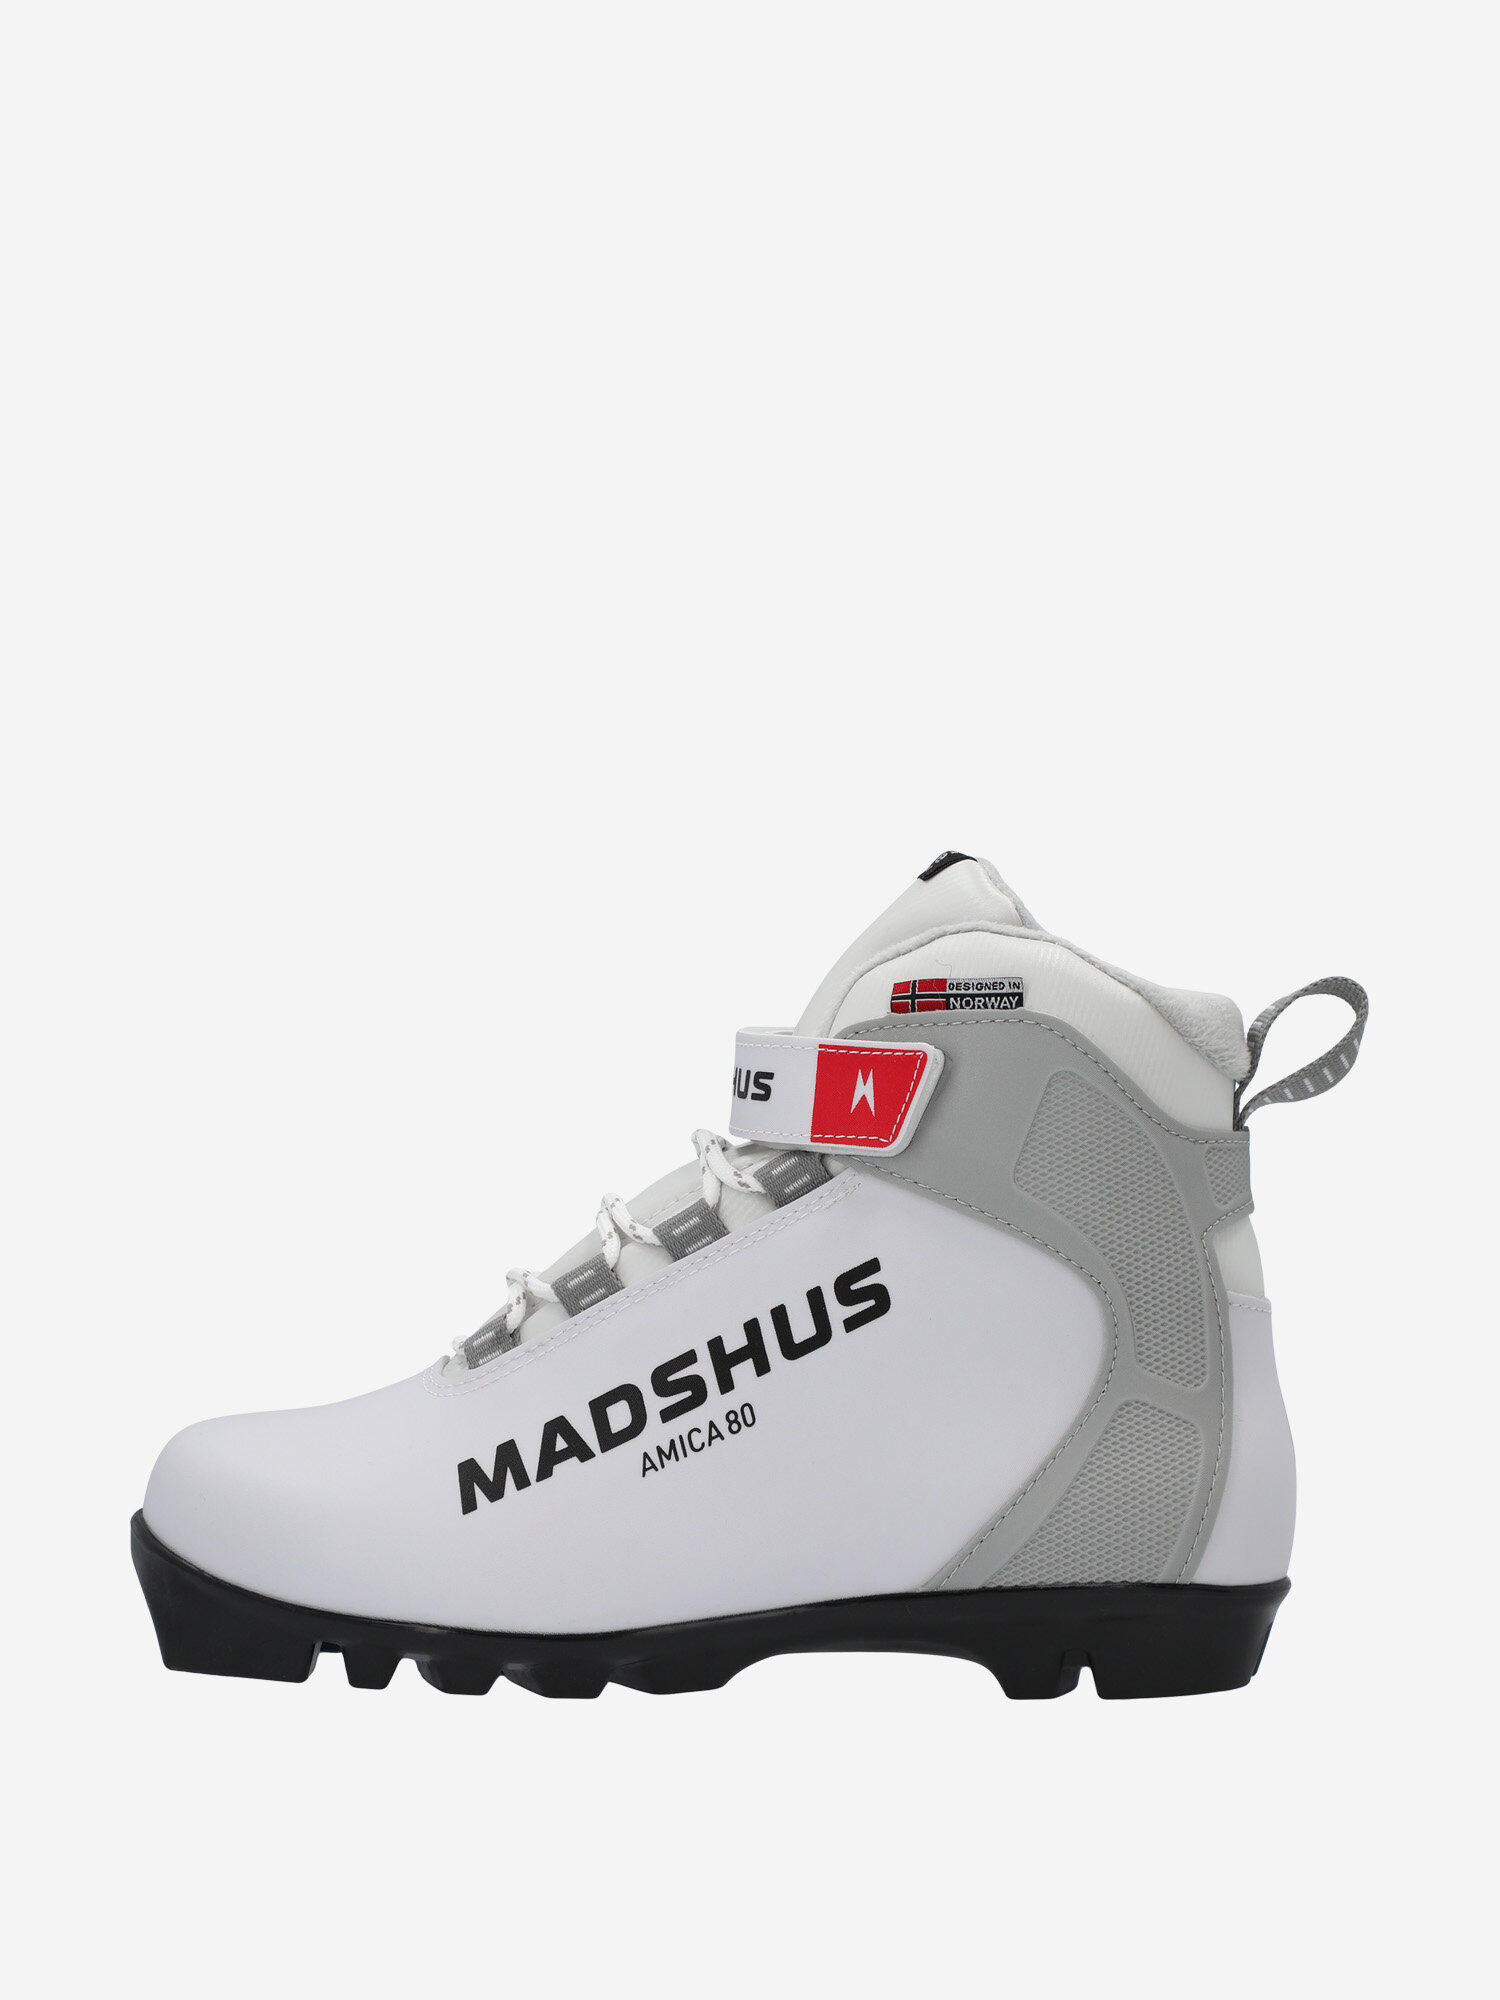 Ботинки для беговых лыж женские Madshus Amica 80 Белый; RUS: 40, Ориг: 41